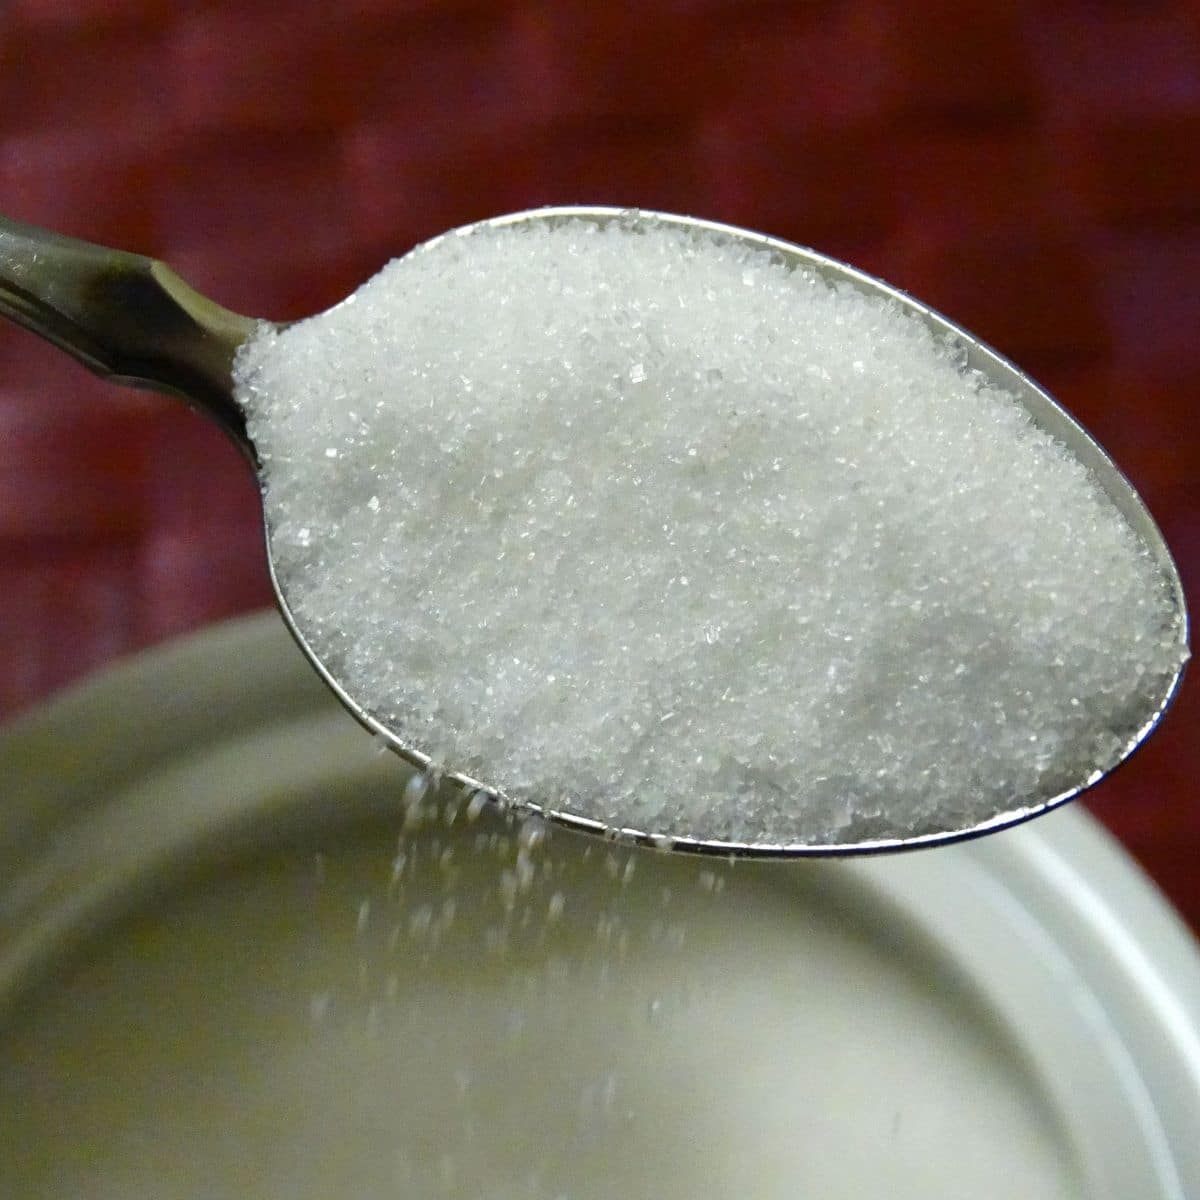 30 grams in teaspoons